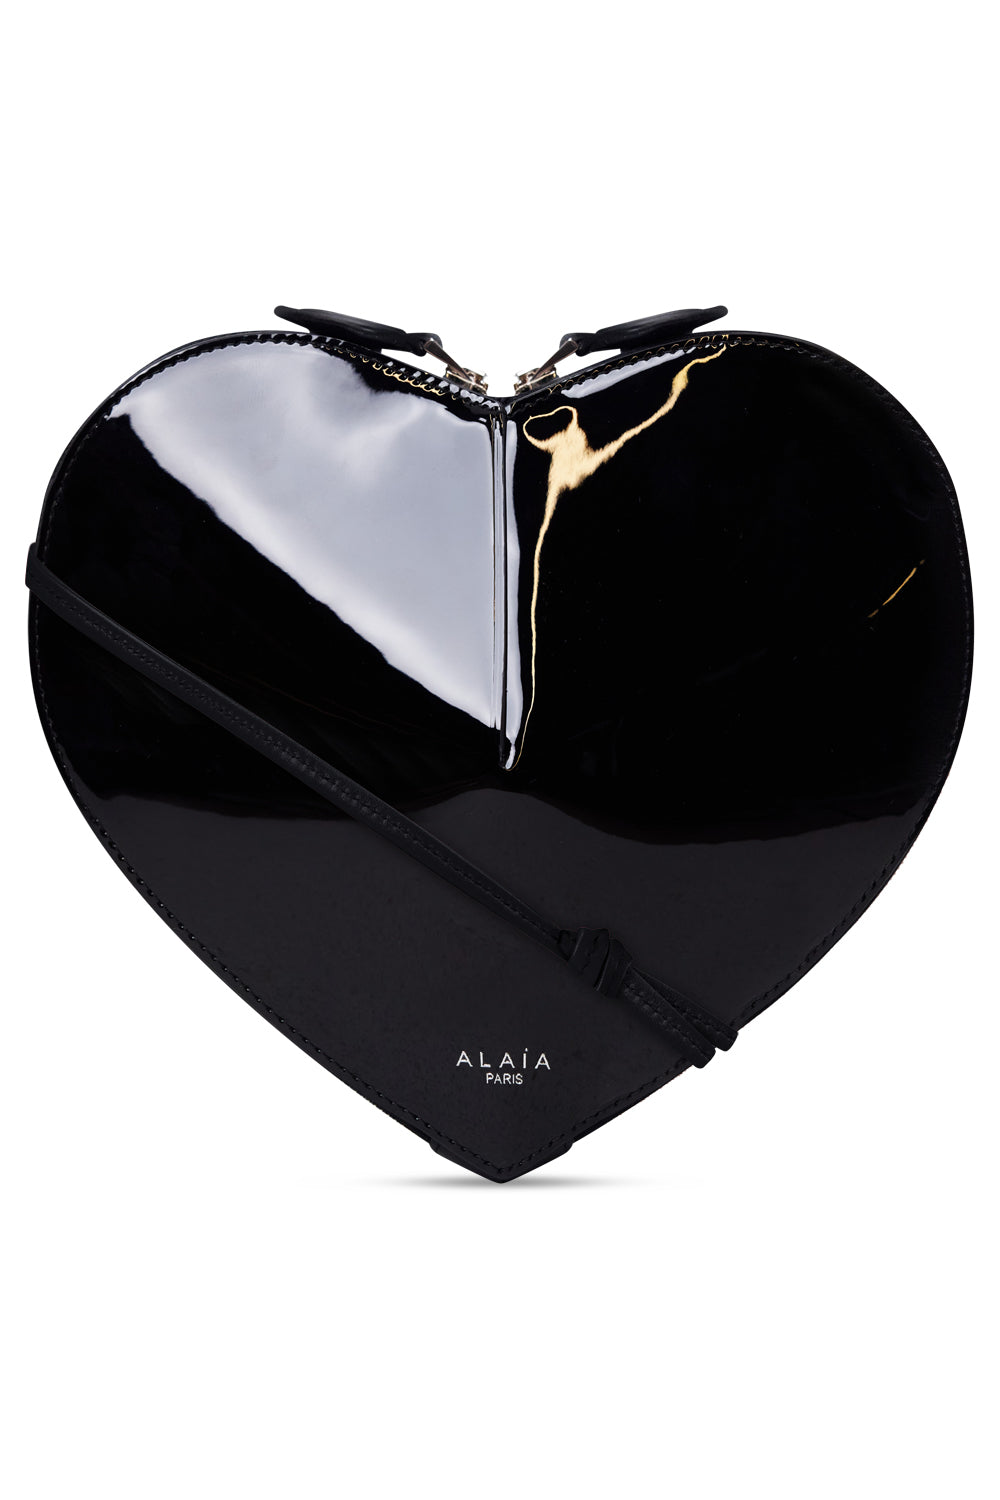 ALAIA BAGS Black Le Coeur Patent Heart Shape Bag | Black